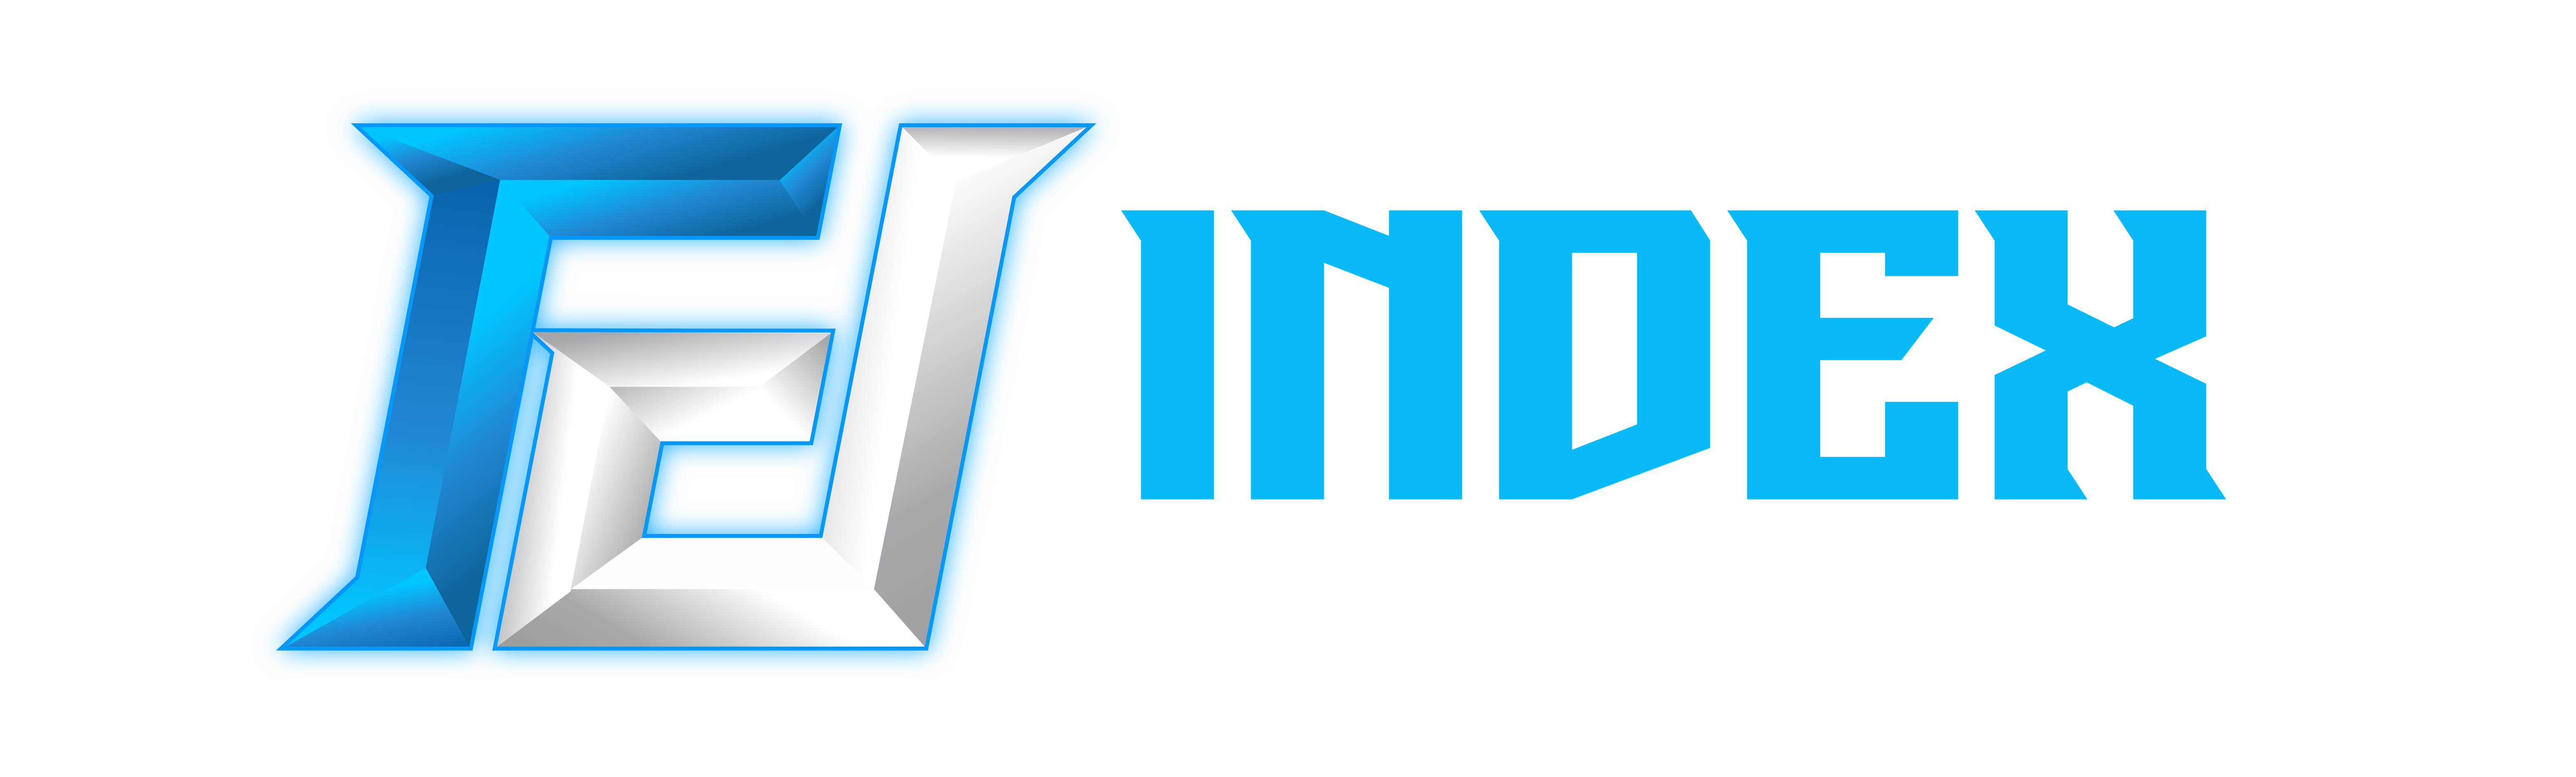 Index Game Center เข้าสู่ระบบ 4444